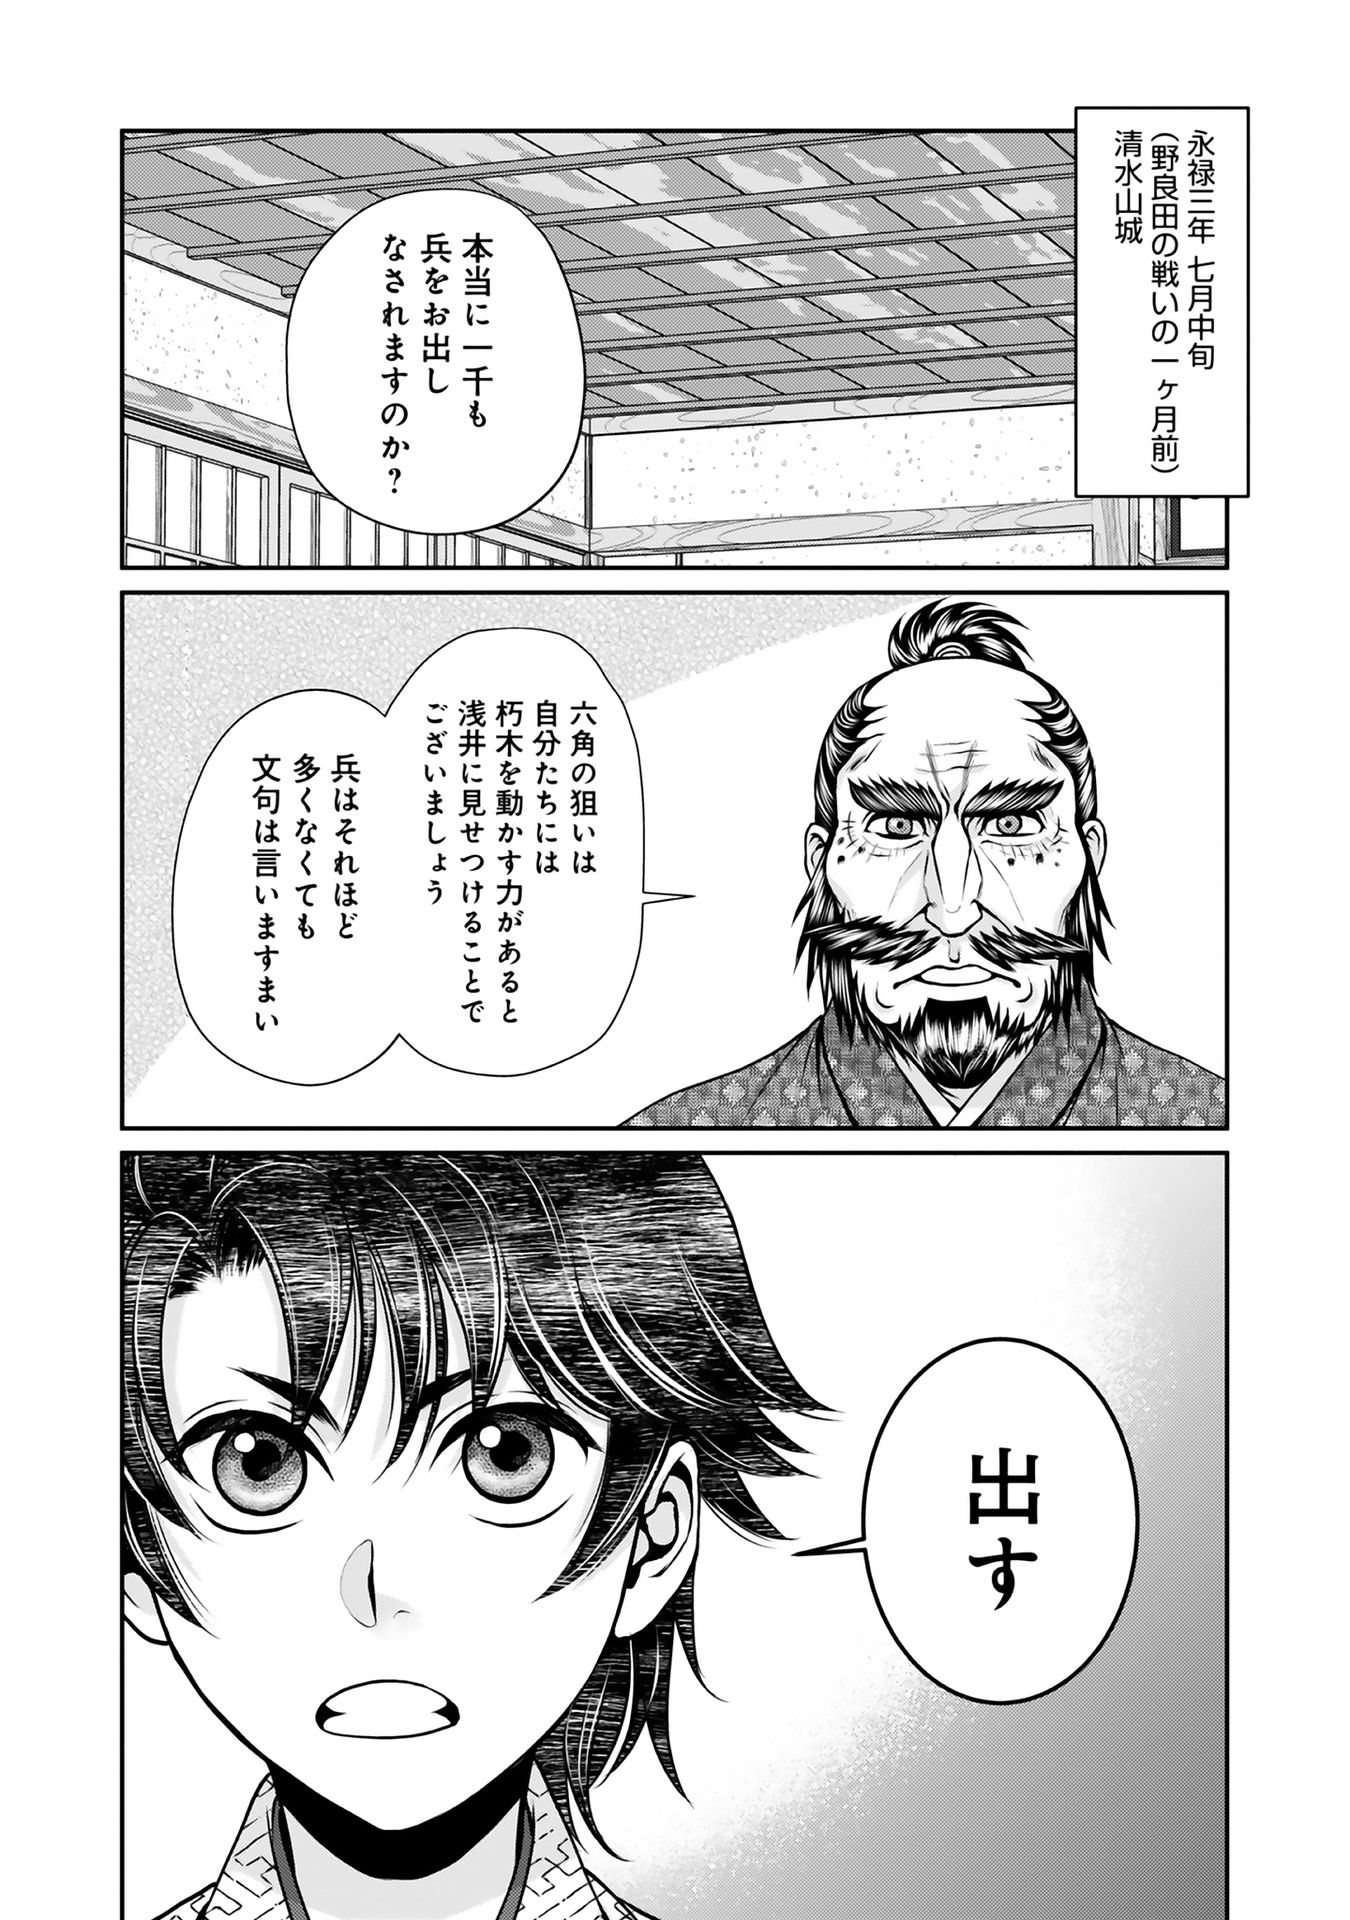 Afumi no Umi – Minamo ga Yureru Toki - Chapter 8 - Page 4